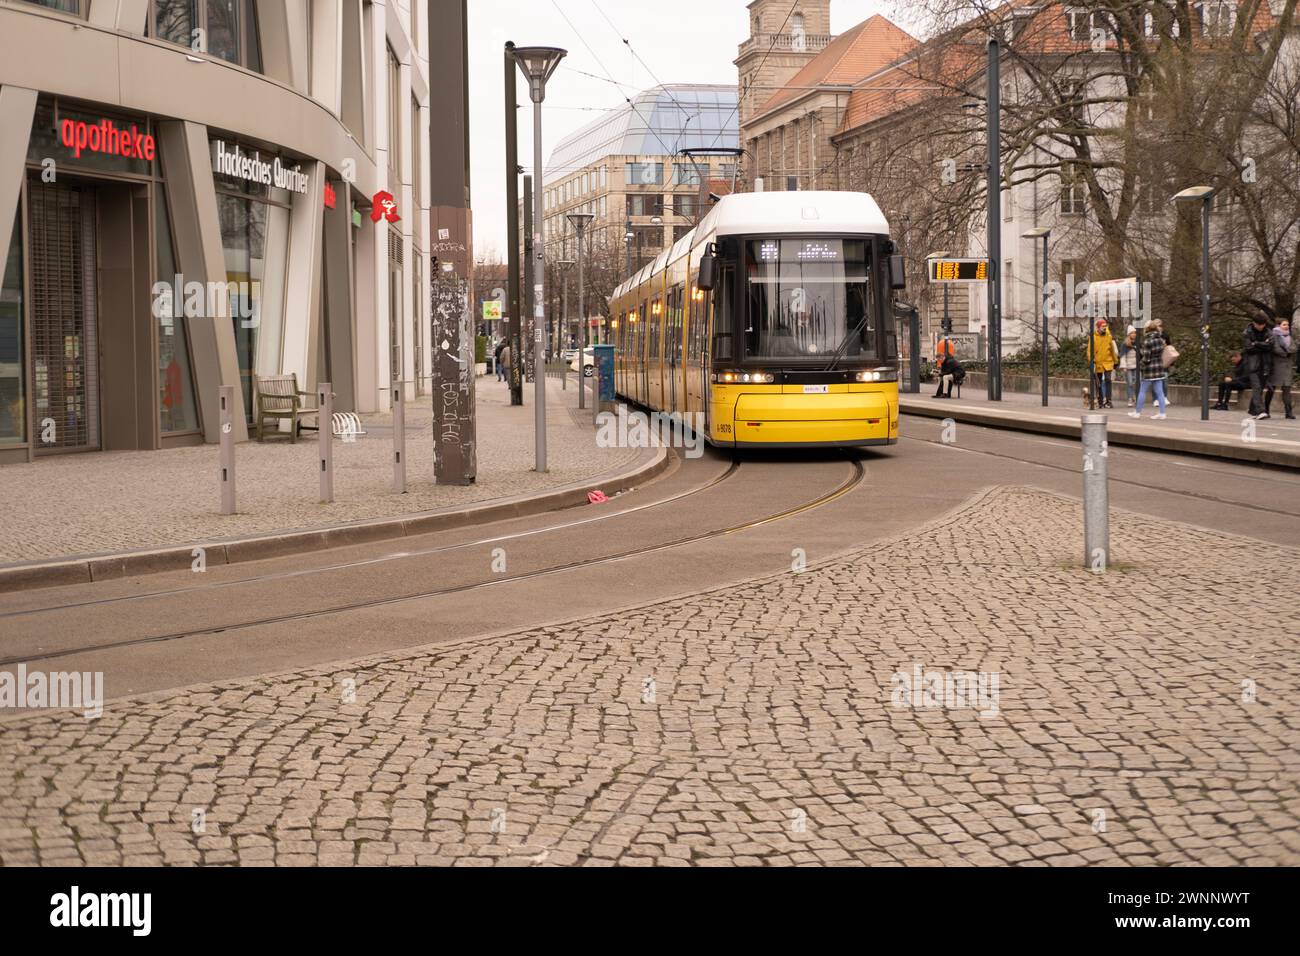 Gelbe Tram Generation Flexity Berlin die Stadtstraße in Berlin entlang fahren, Reise-, Tourismus- und Städtereisen, umweltfreundliches öffentliches Verkehrssystem, Stockfoto